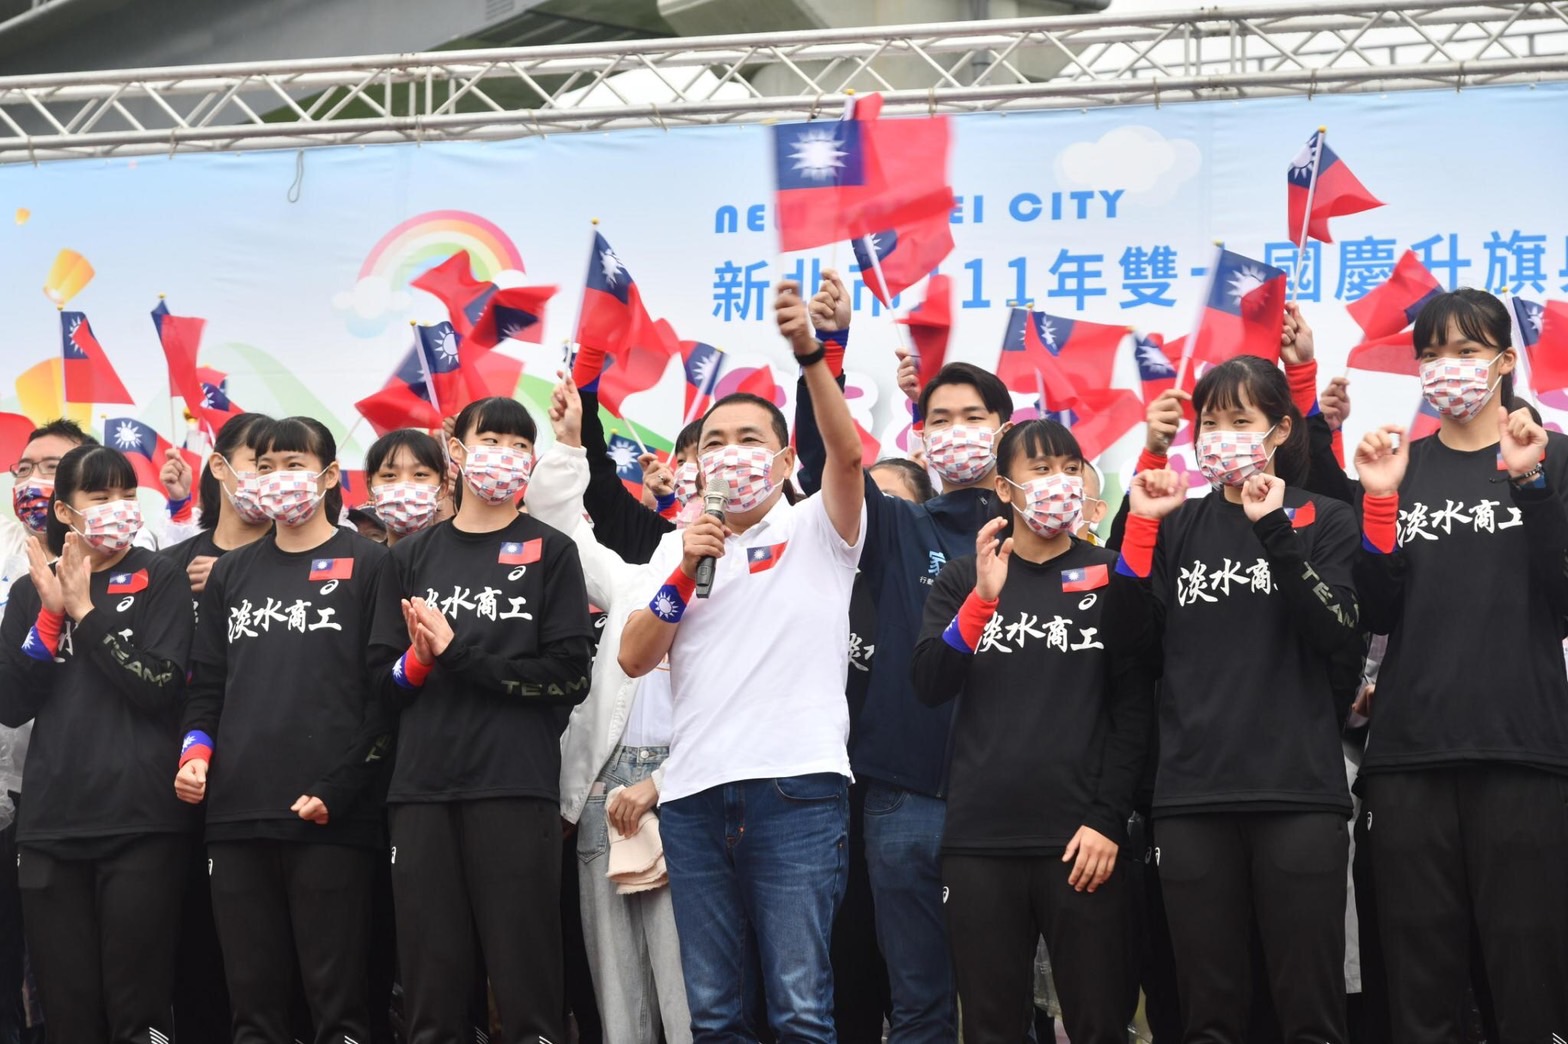 市長侯友宜率領市政團隊，攜手淡水商工女子籃球隊領唱國歌，與現場民眾一同歡慶中華民國生日